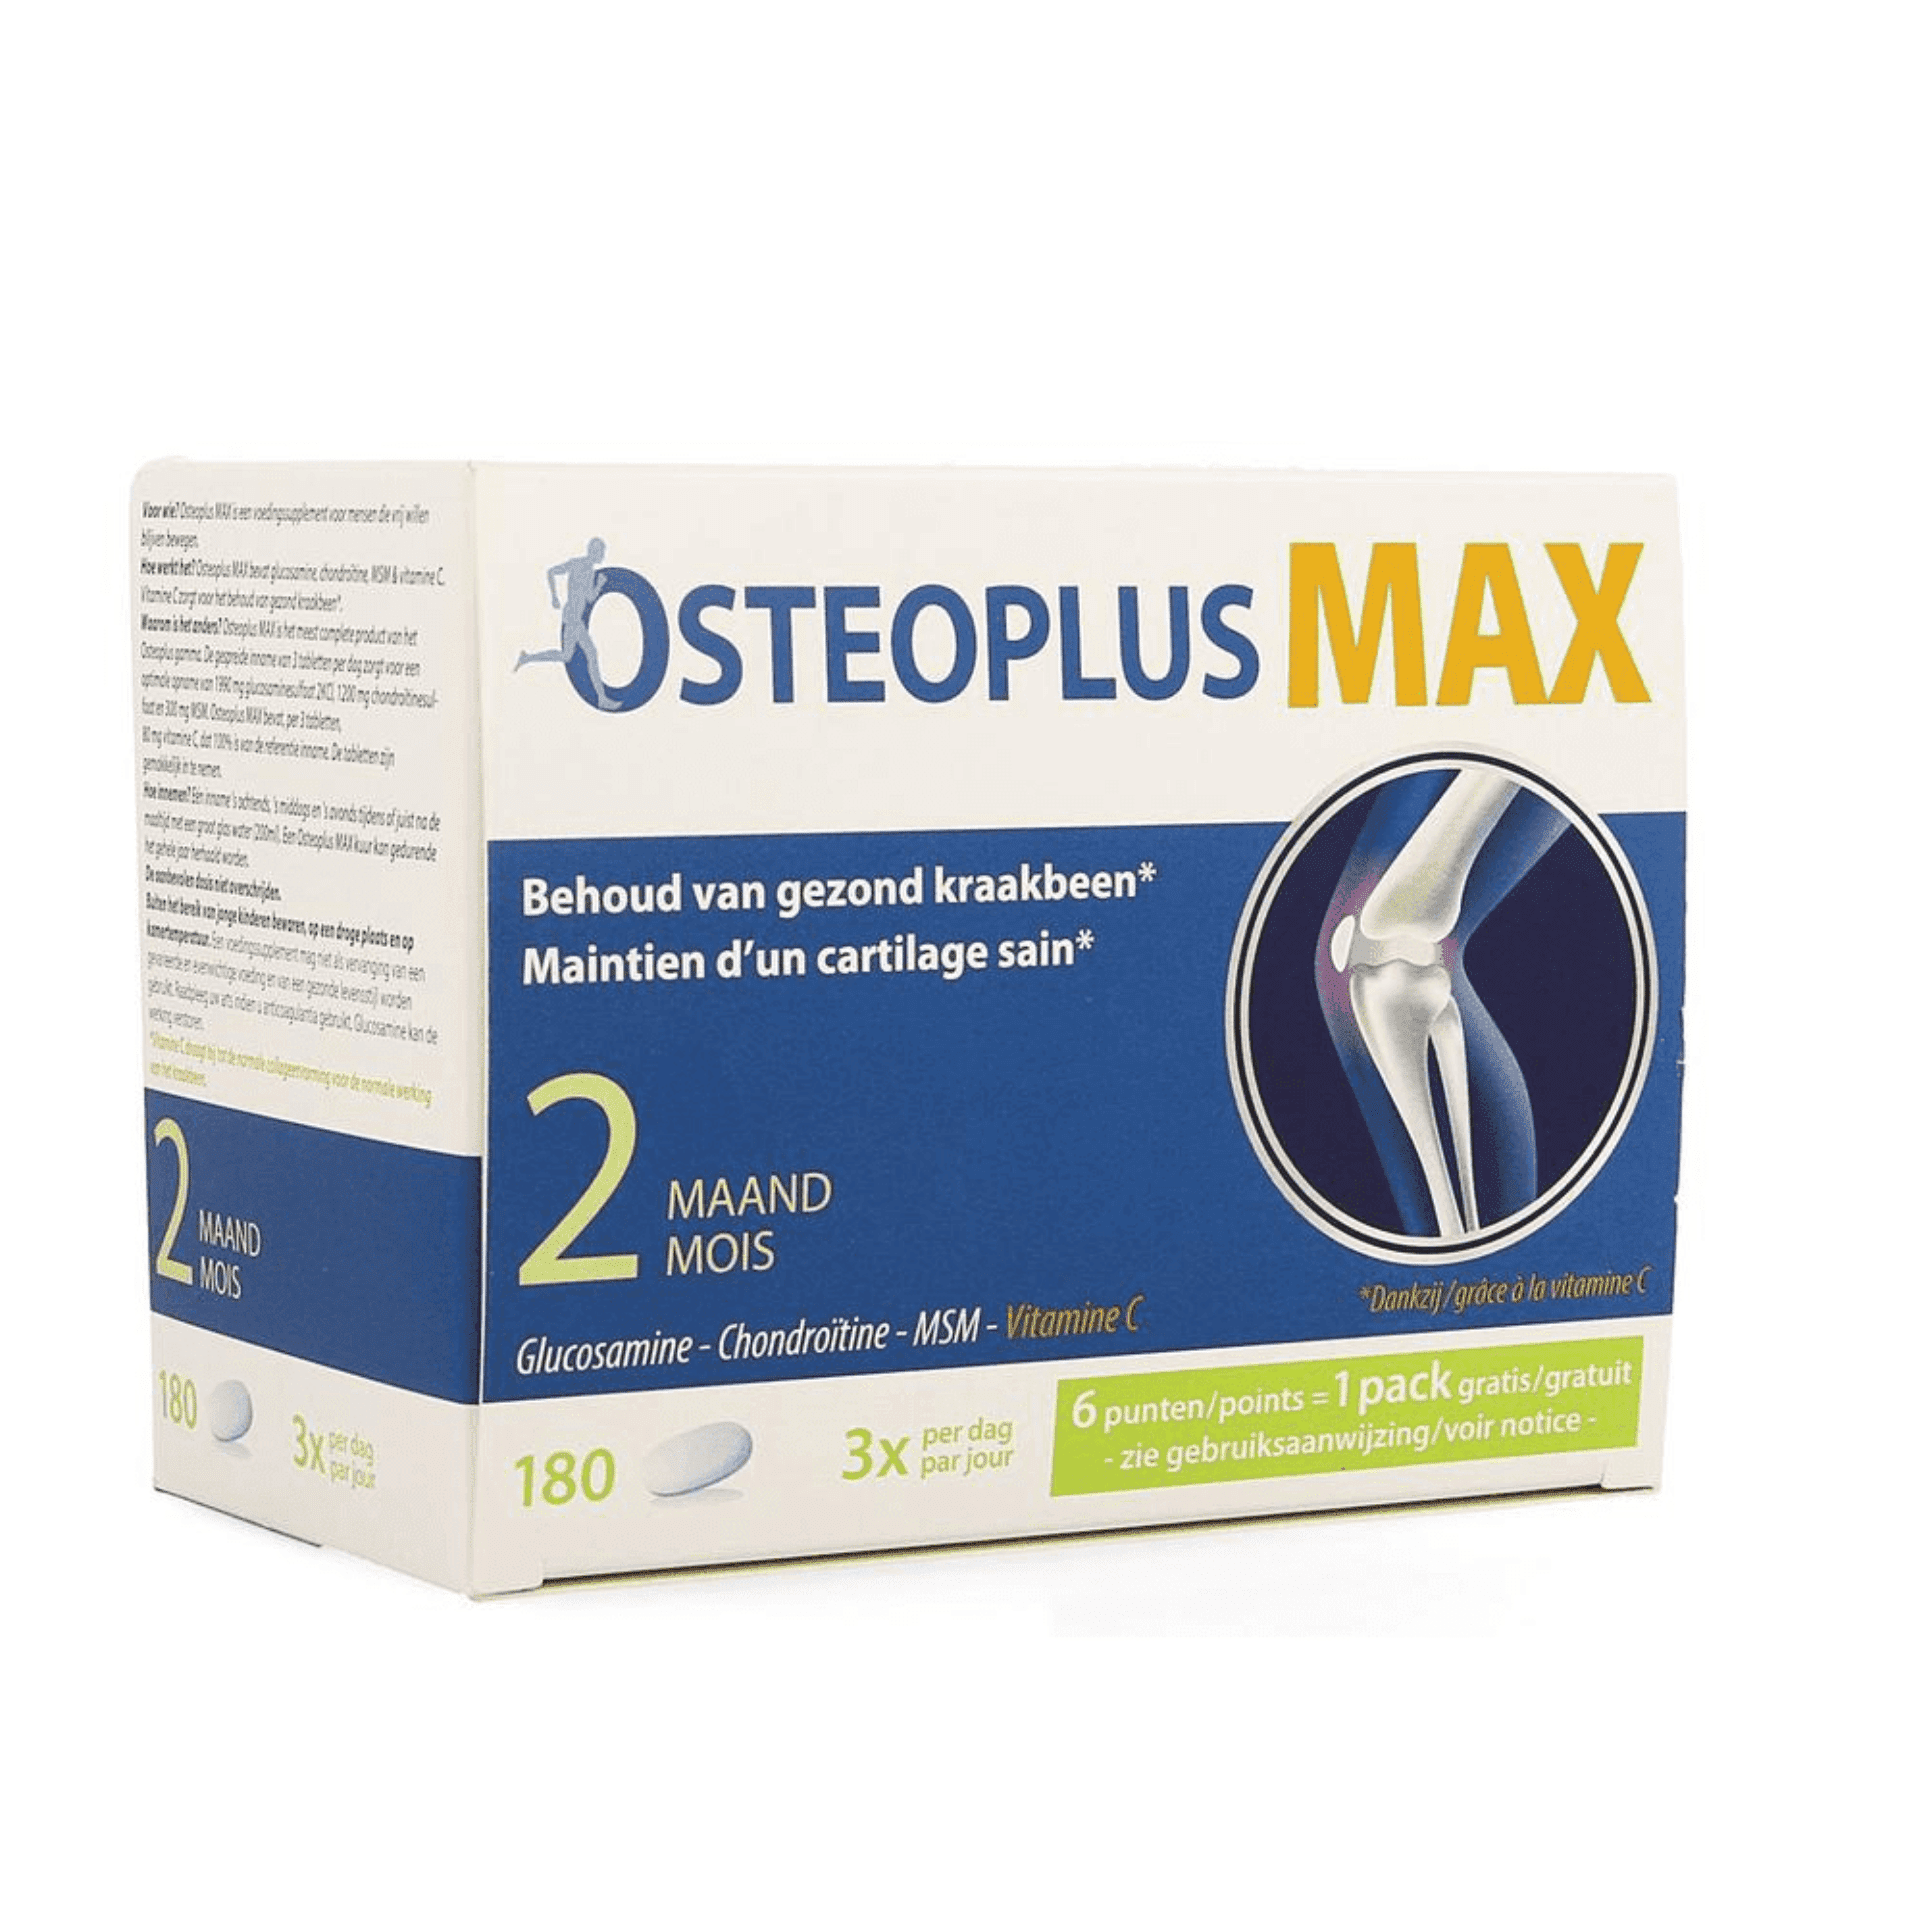 Osteoplus Max 2 Mois 180 comprimés